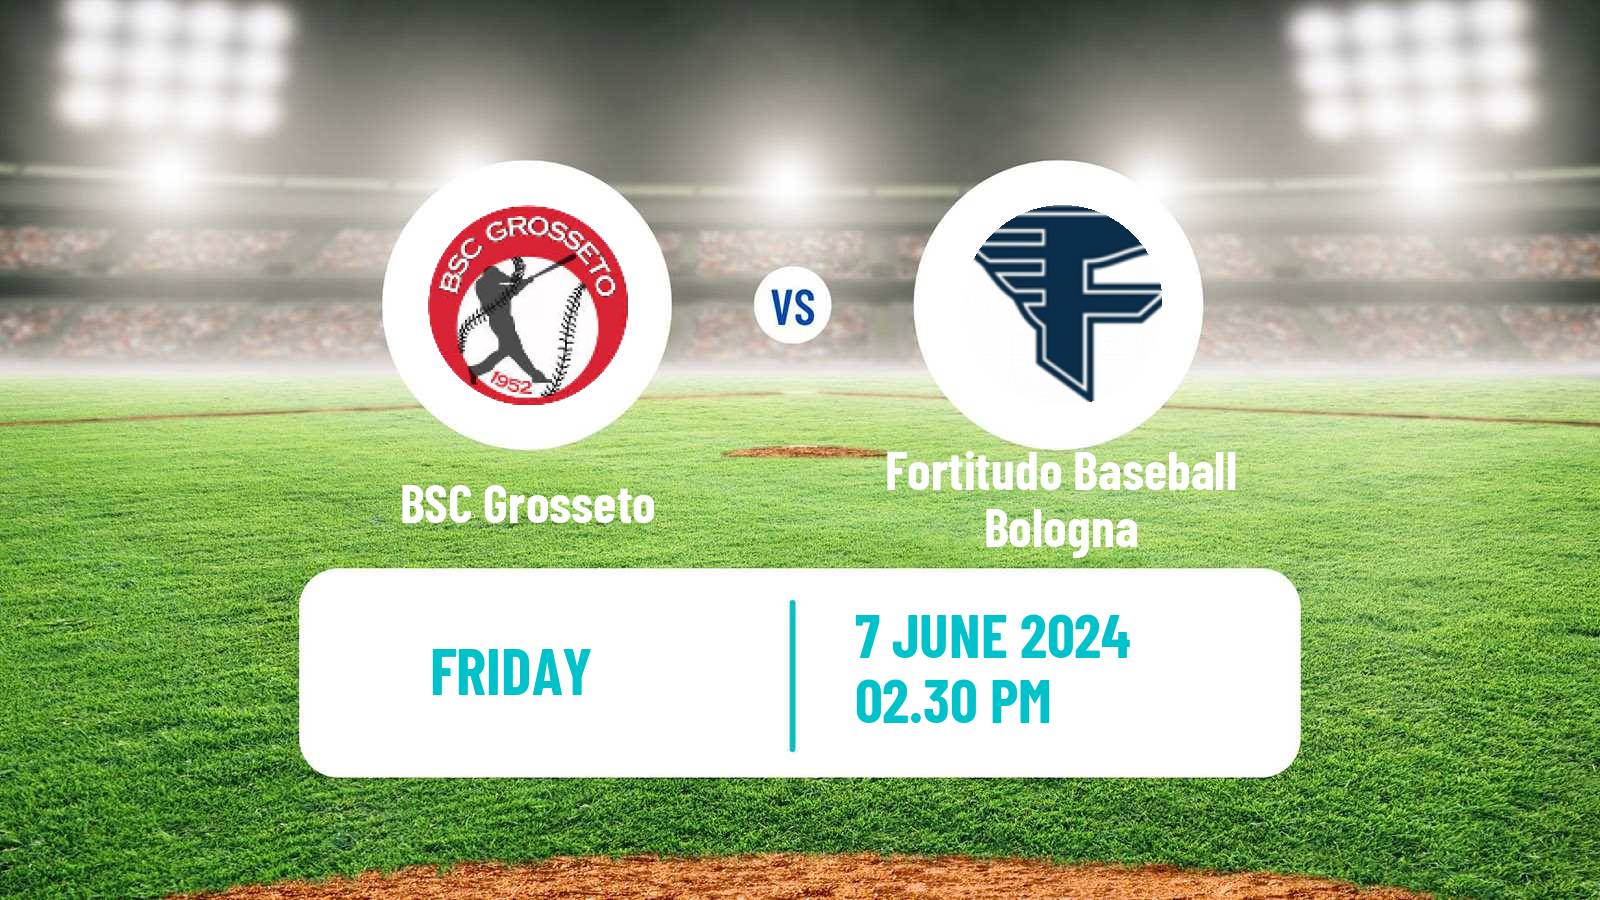 Baseball Italian Serie A1 Baseball BSC Grosseto - Fortitudo Baseball Bologna